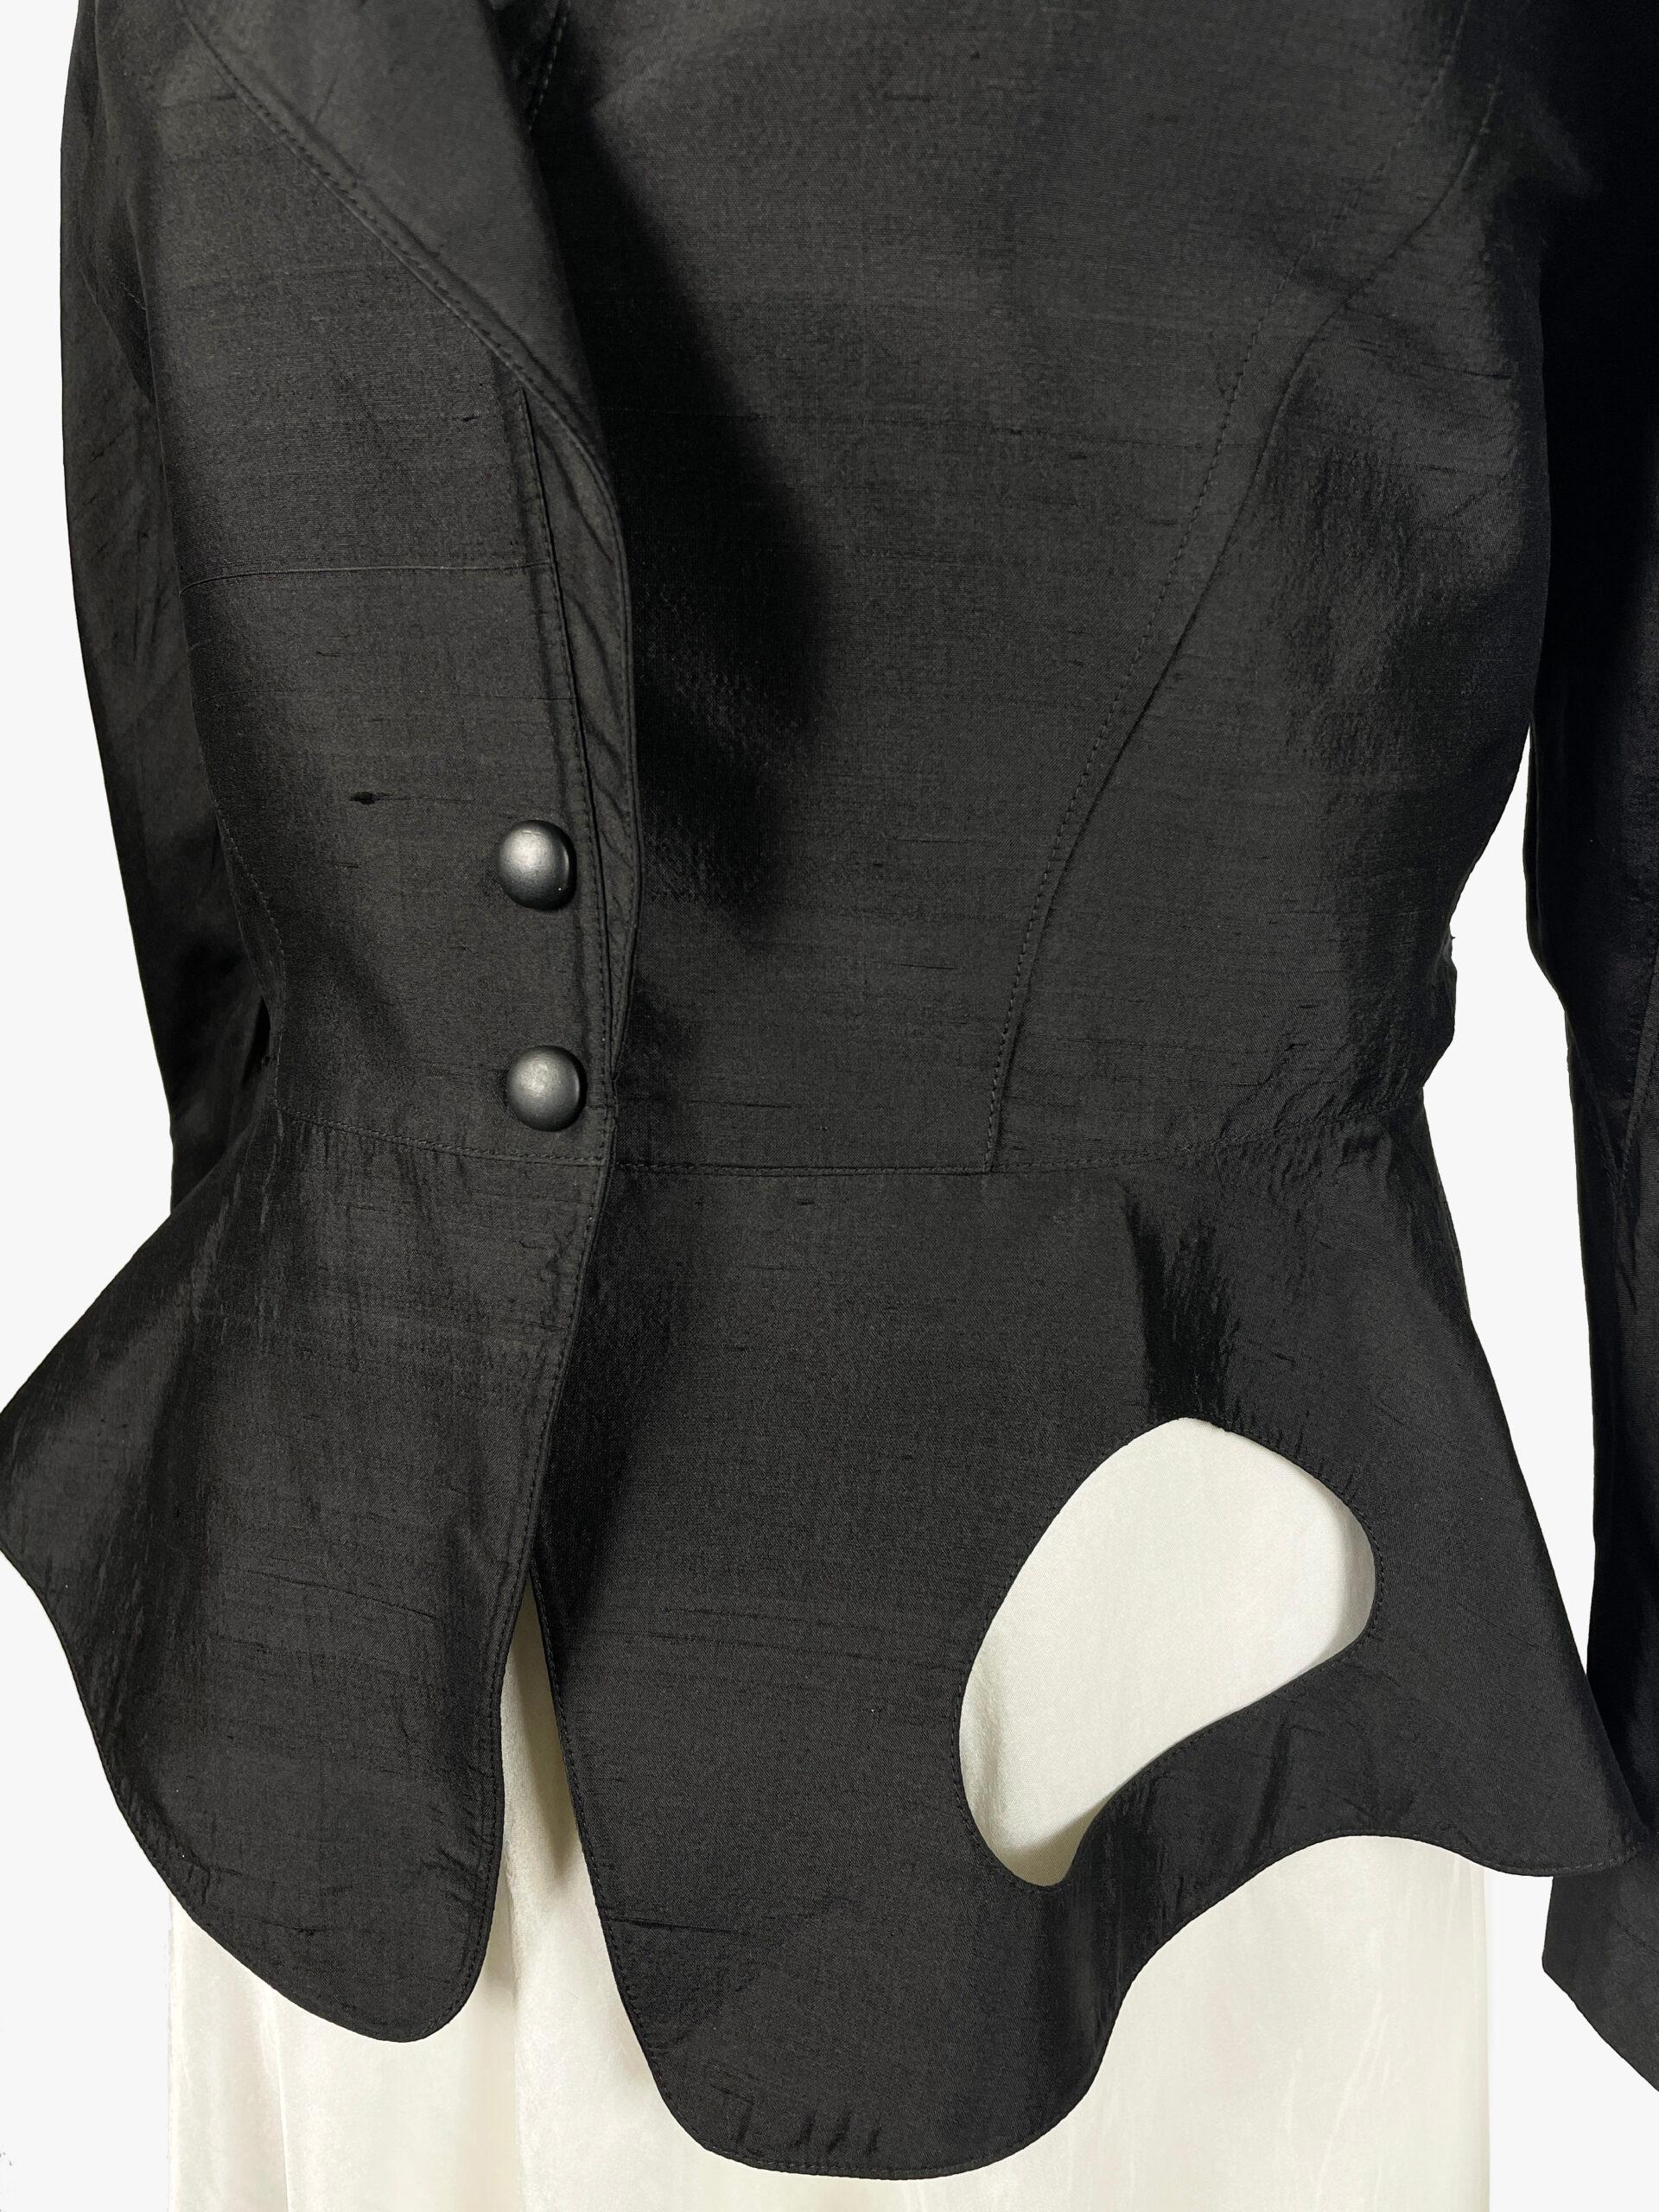 Black Thierry Mugler Vintage Silk Blazer with Architectural Cut, 1990s